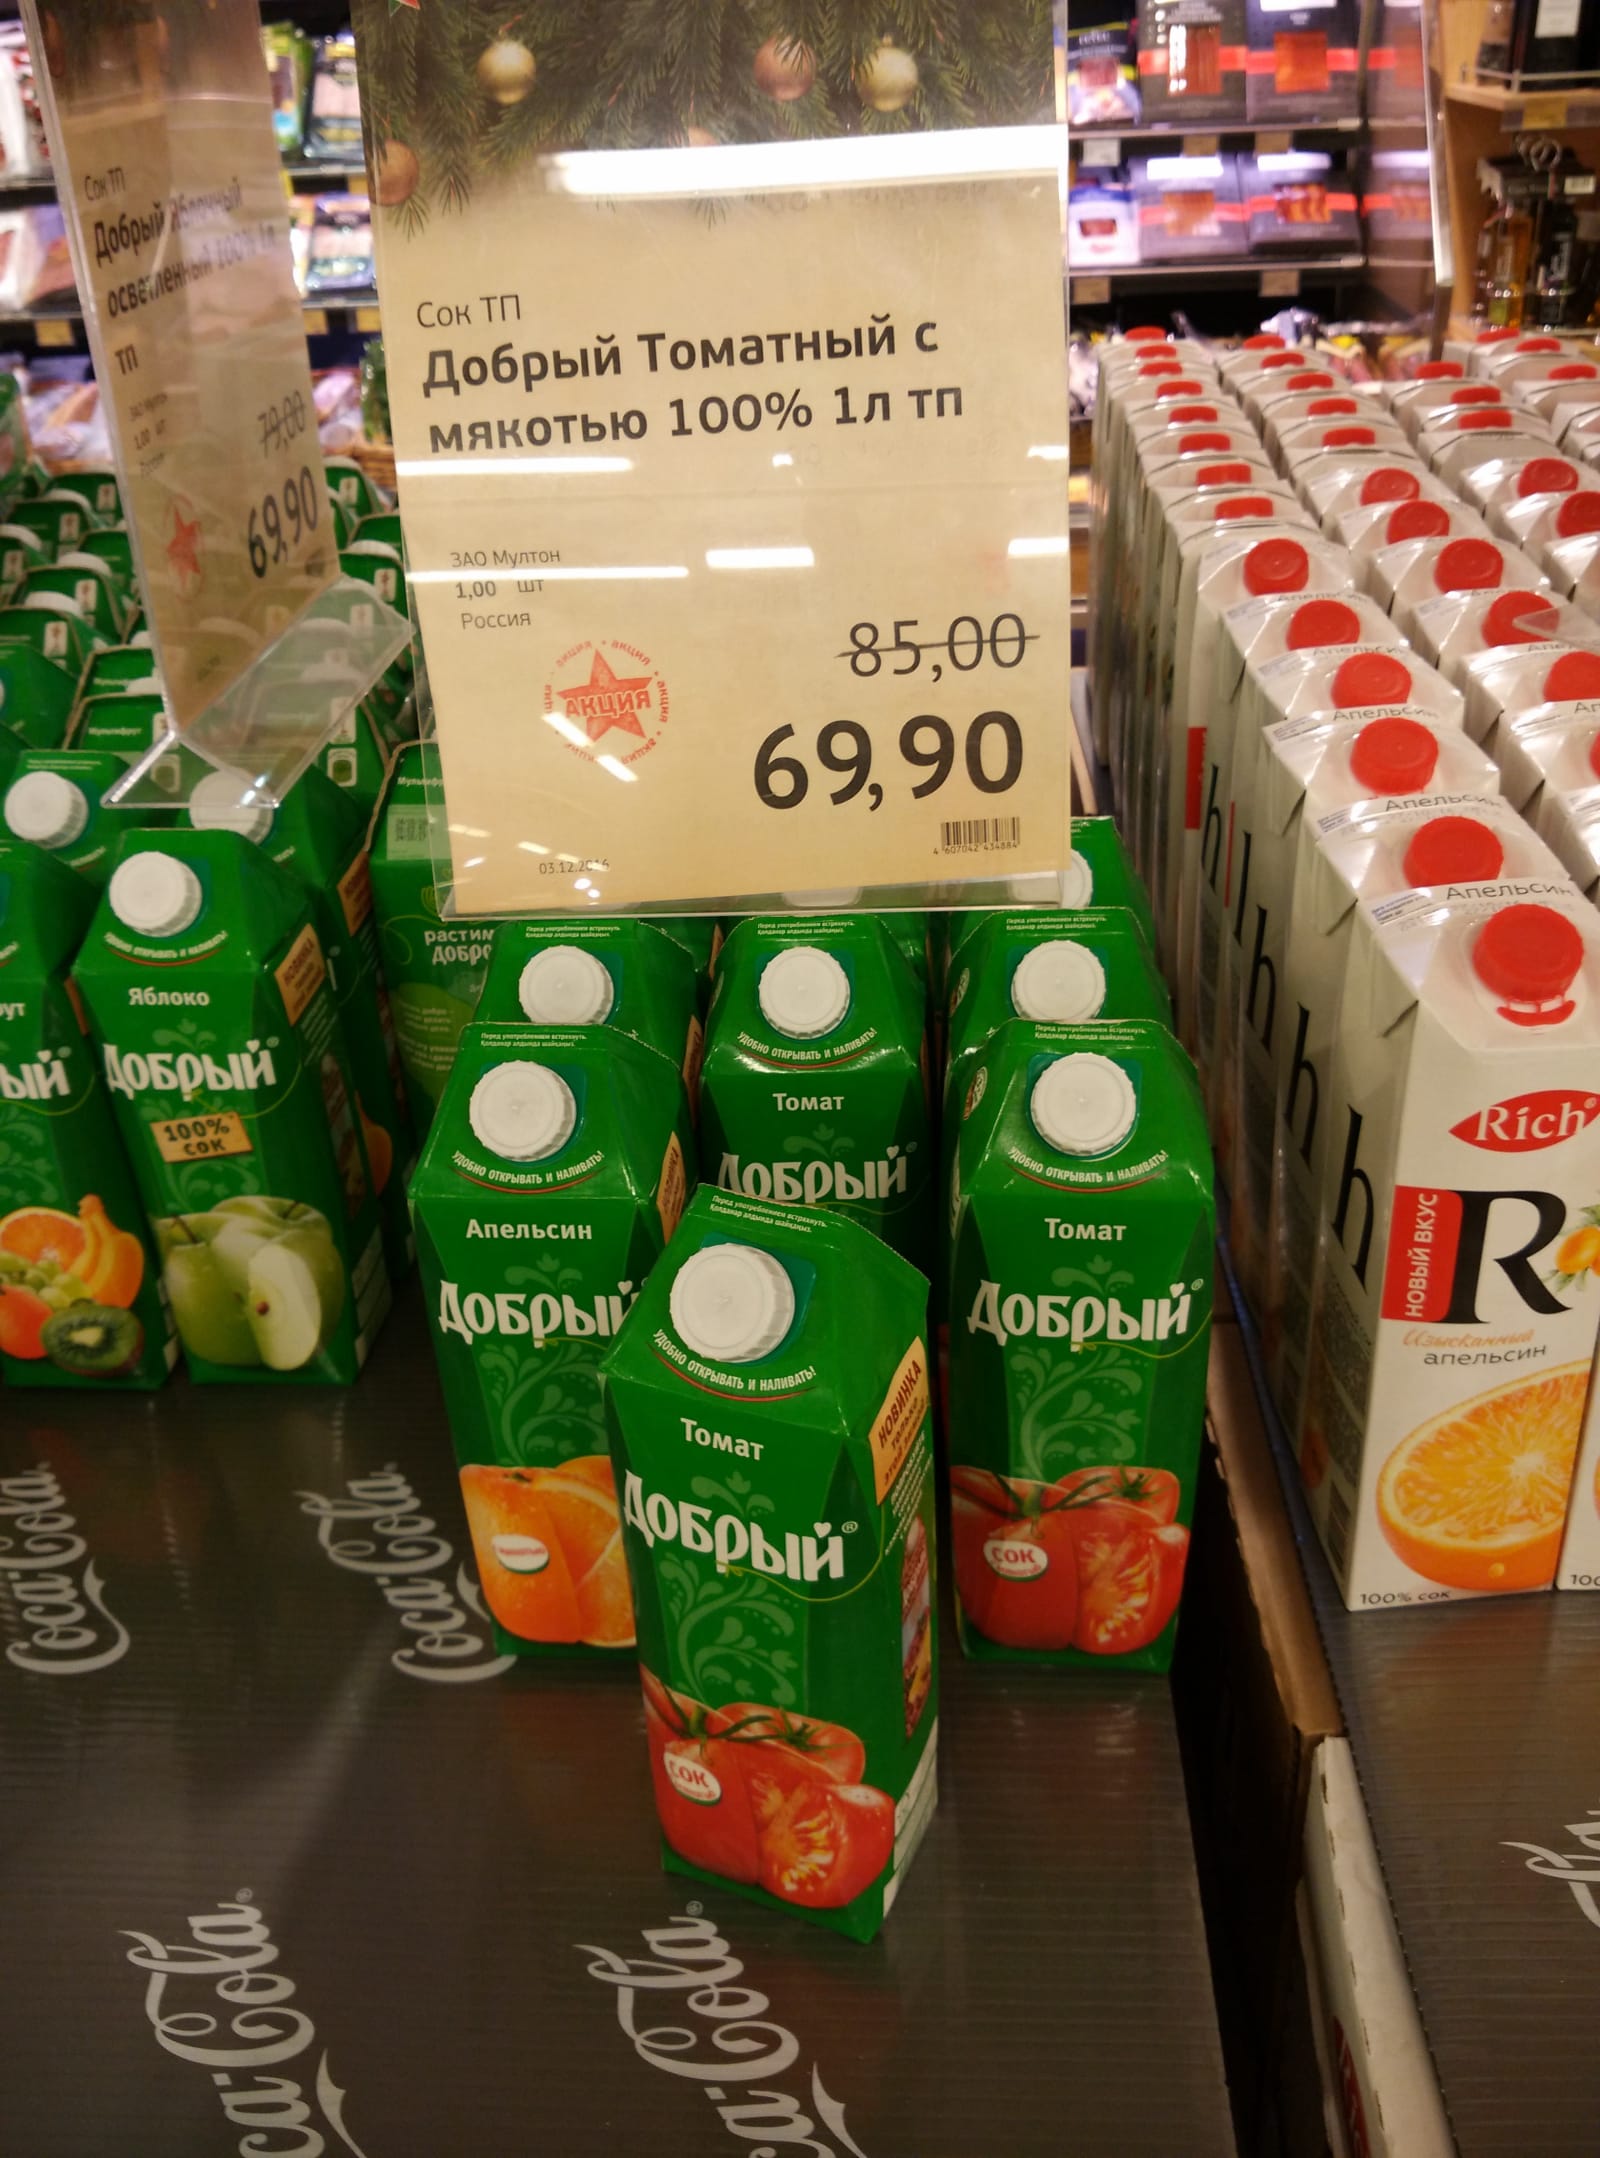 俄罗斯超市果汁|俄罗斯留学物价|俄罗斯超市物价|俄罗斯留学